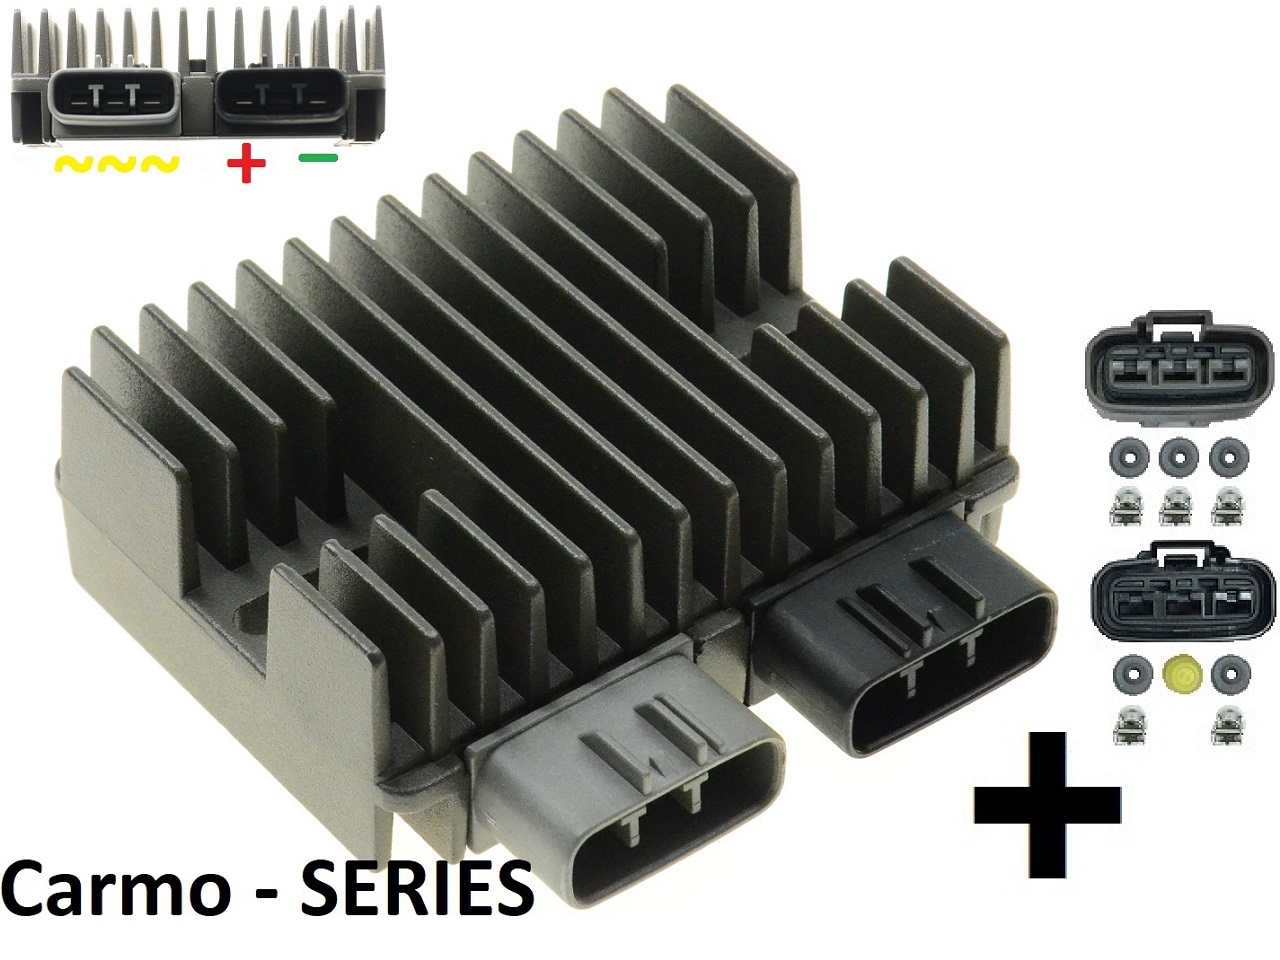 CARR5925-SERIE - MOSFET SERIE SERIES Raddrizzatore del regolatore di tensione (migliorato SH847) piace compu-fire + connettori - Clicca l'immagine per chiudere